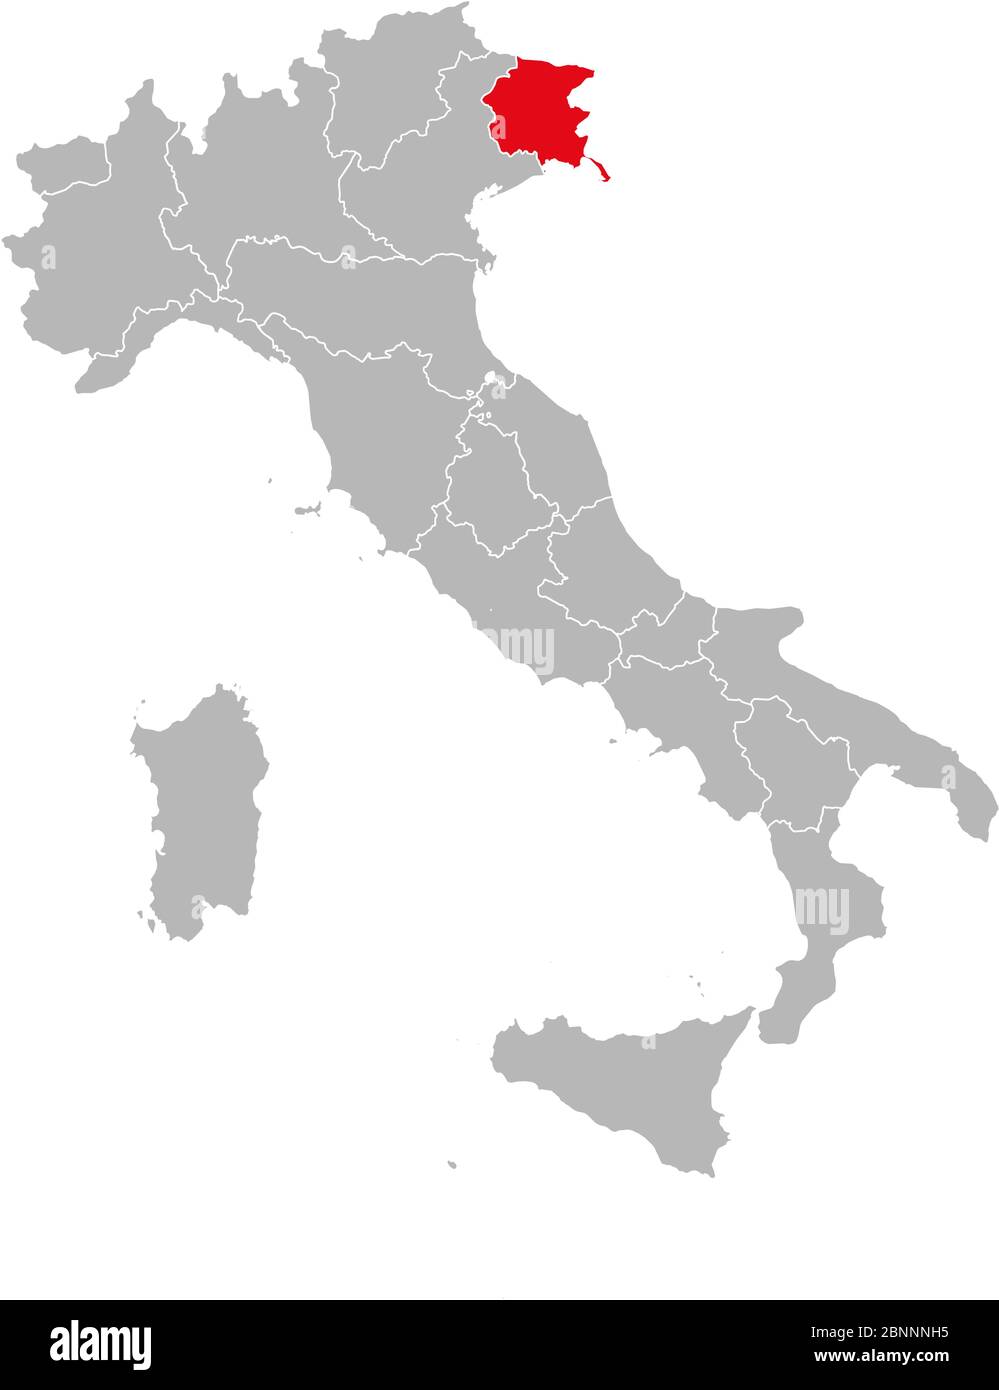 friaul julisch venetien rot auf italien Karte markiert. Grauer Hintergrund. Politische Landkarte Italiens. Stock Vektor